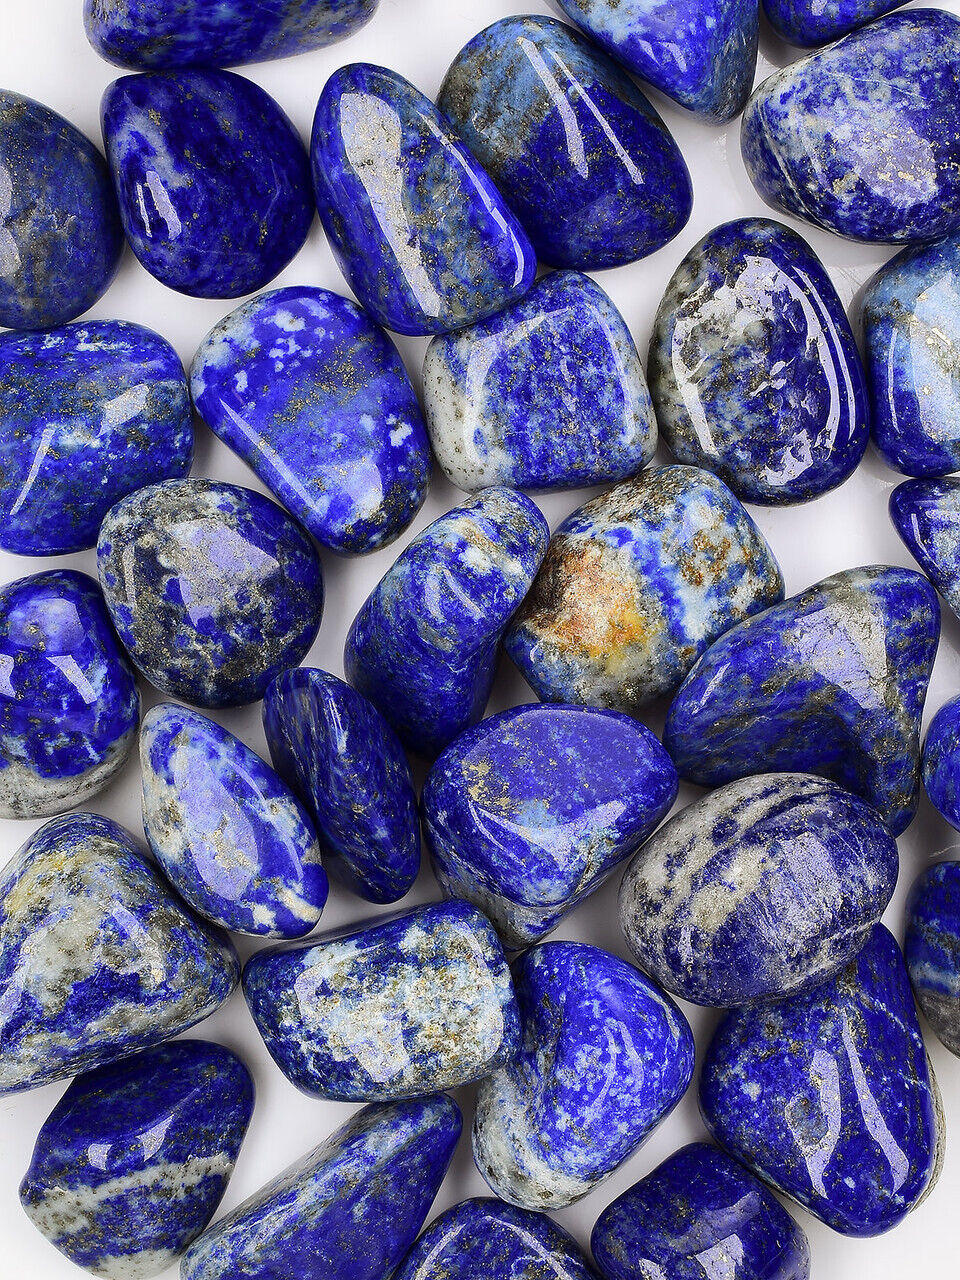 Lapis Lazuli High Graded Tumbled Stone - 1 KG / 1 LB / 0.5 LB / 5 PCS / 1 PC